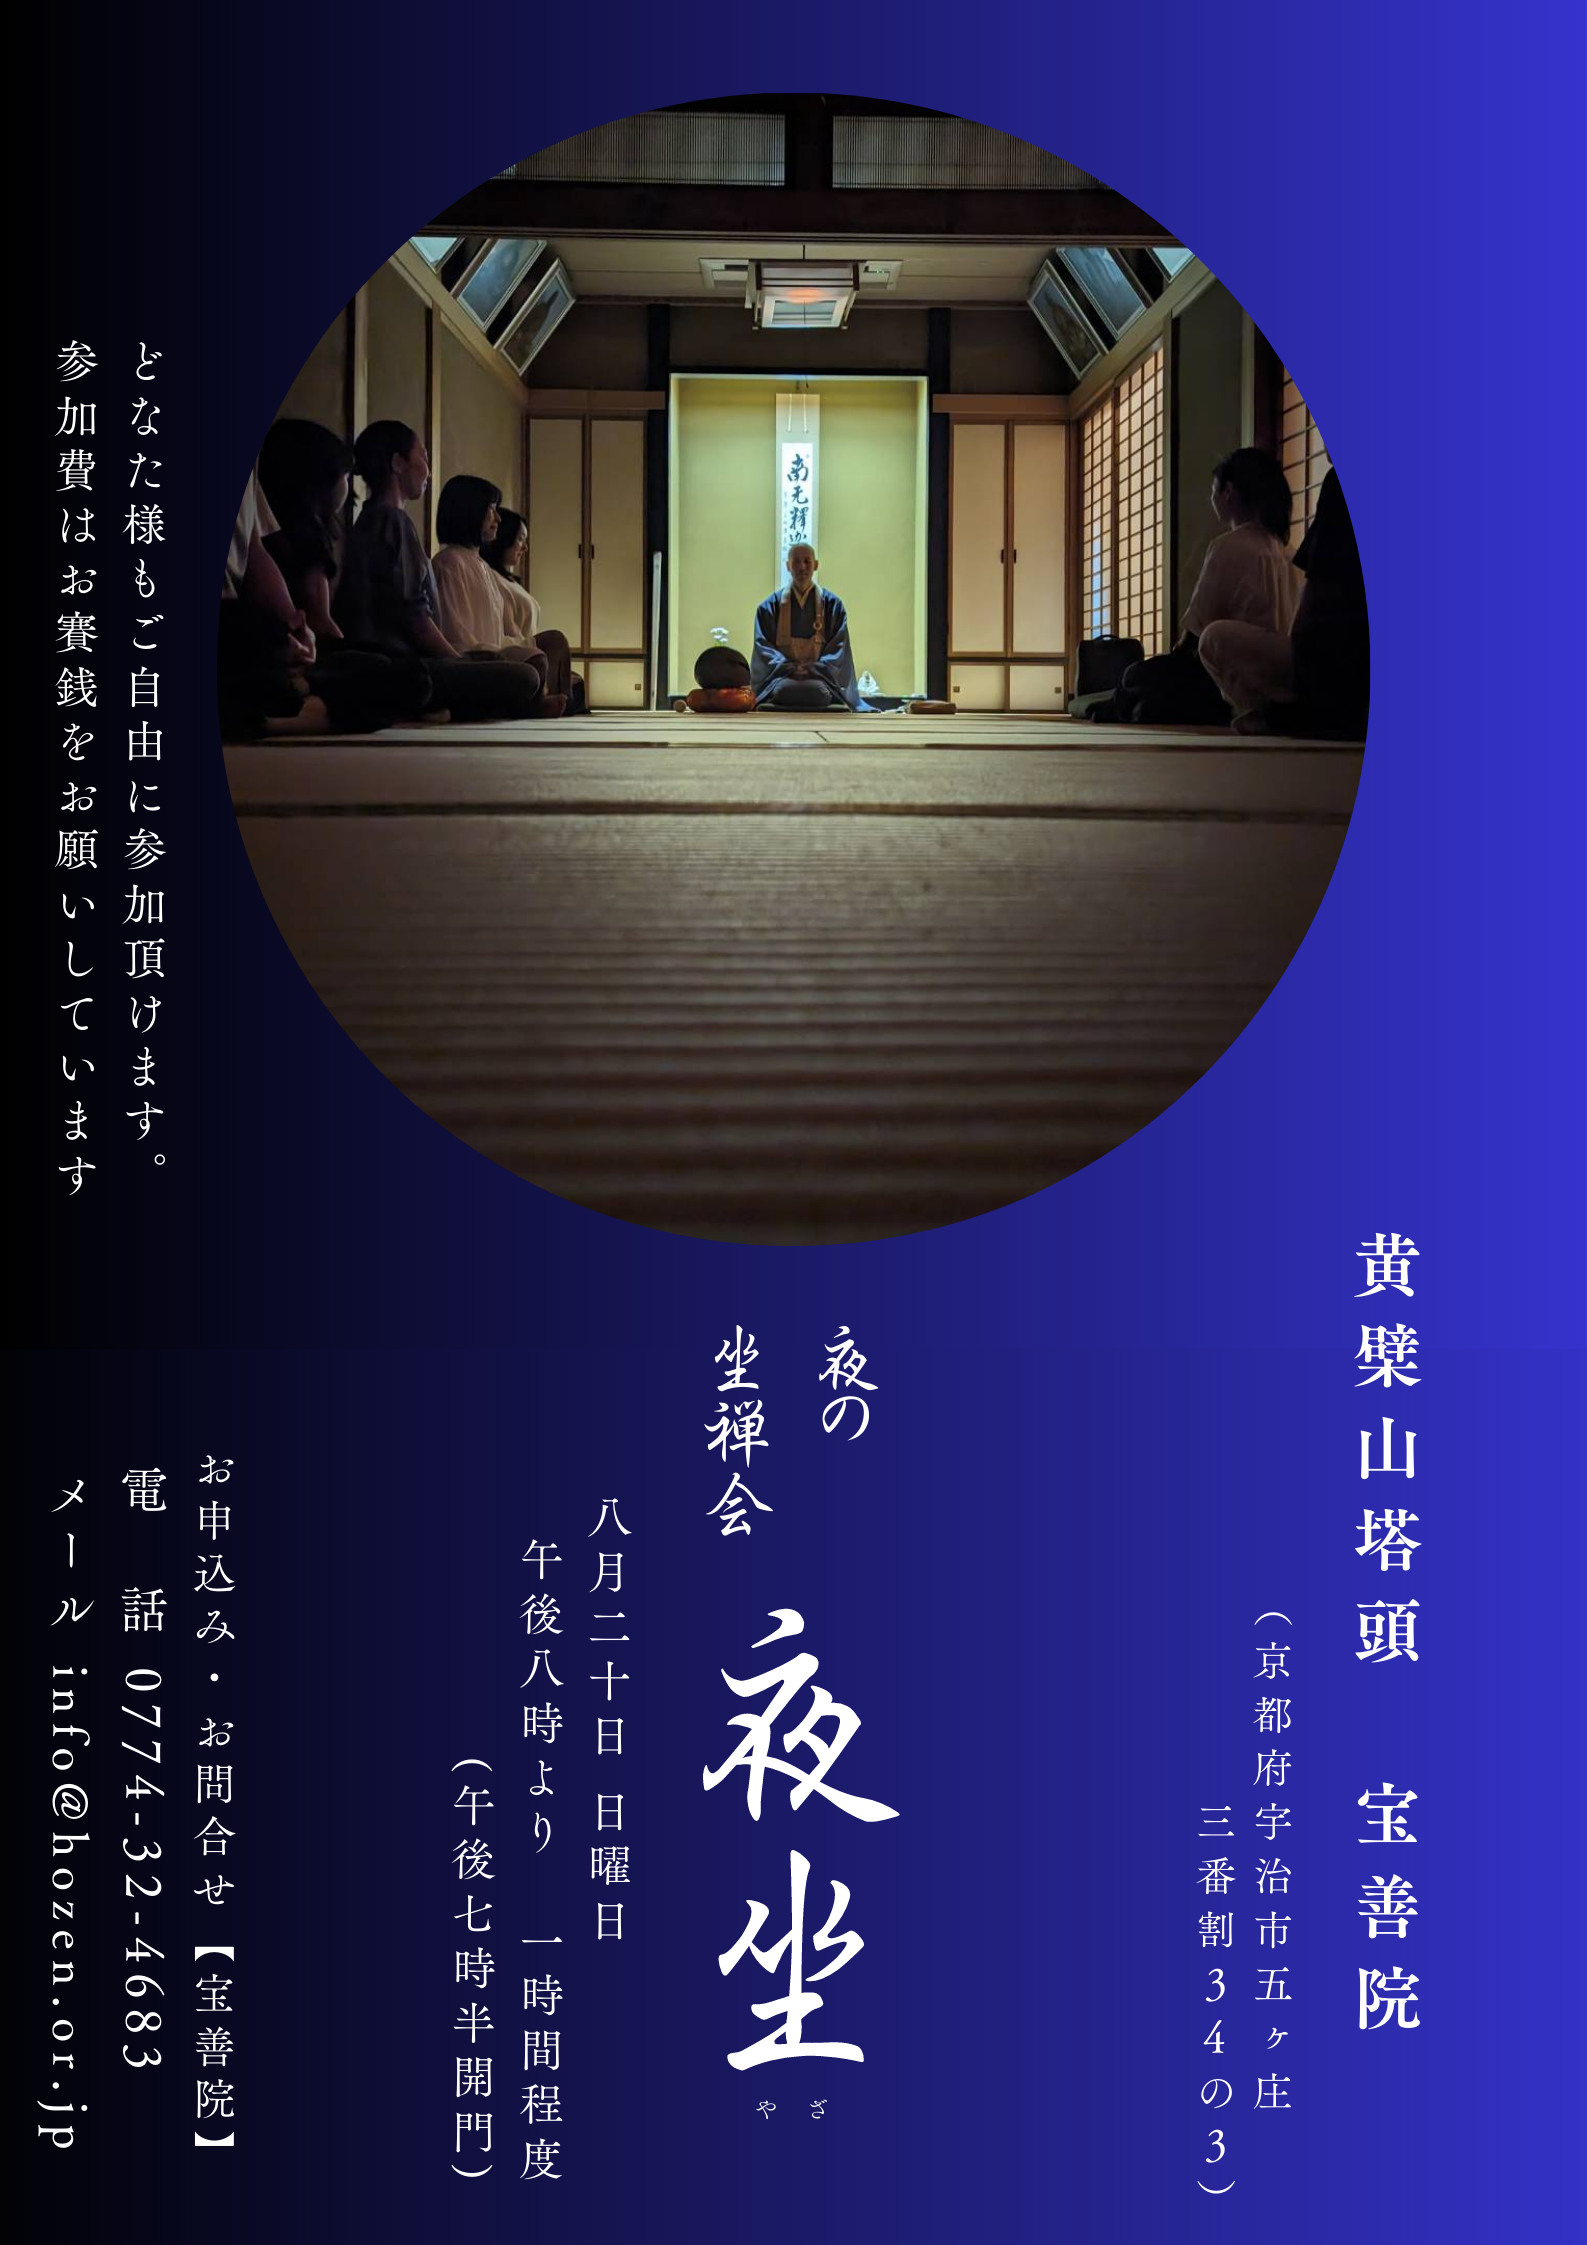 【京都宇治・宝善院】夜の坐禅会『夜坐』のチラシです。8月20日20:00より坐禅を始めます。どなた様もご参加下さい。